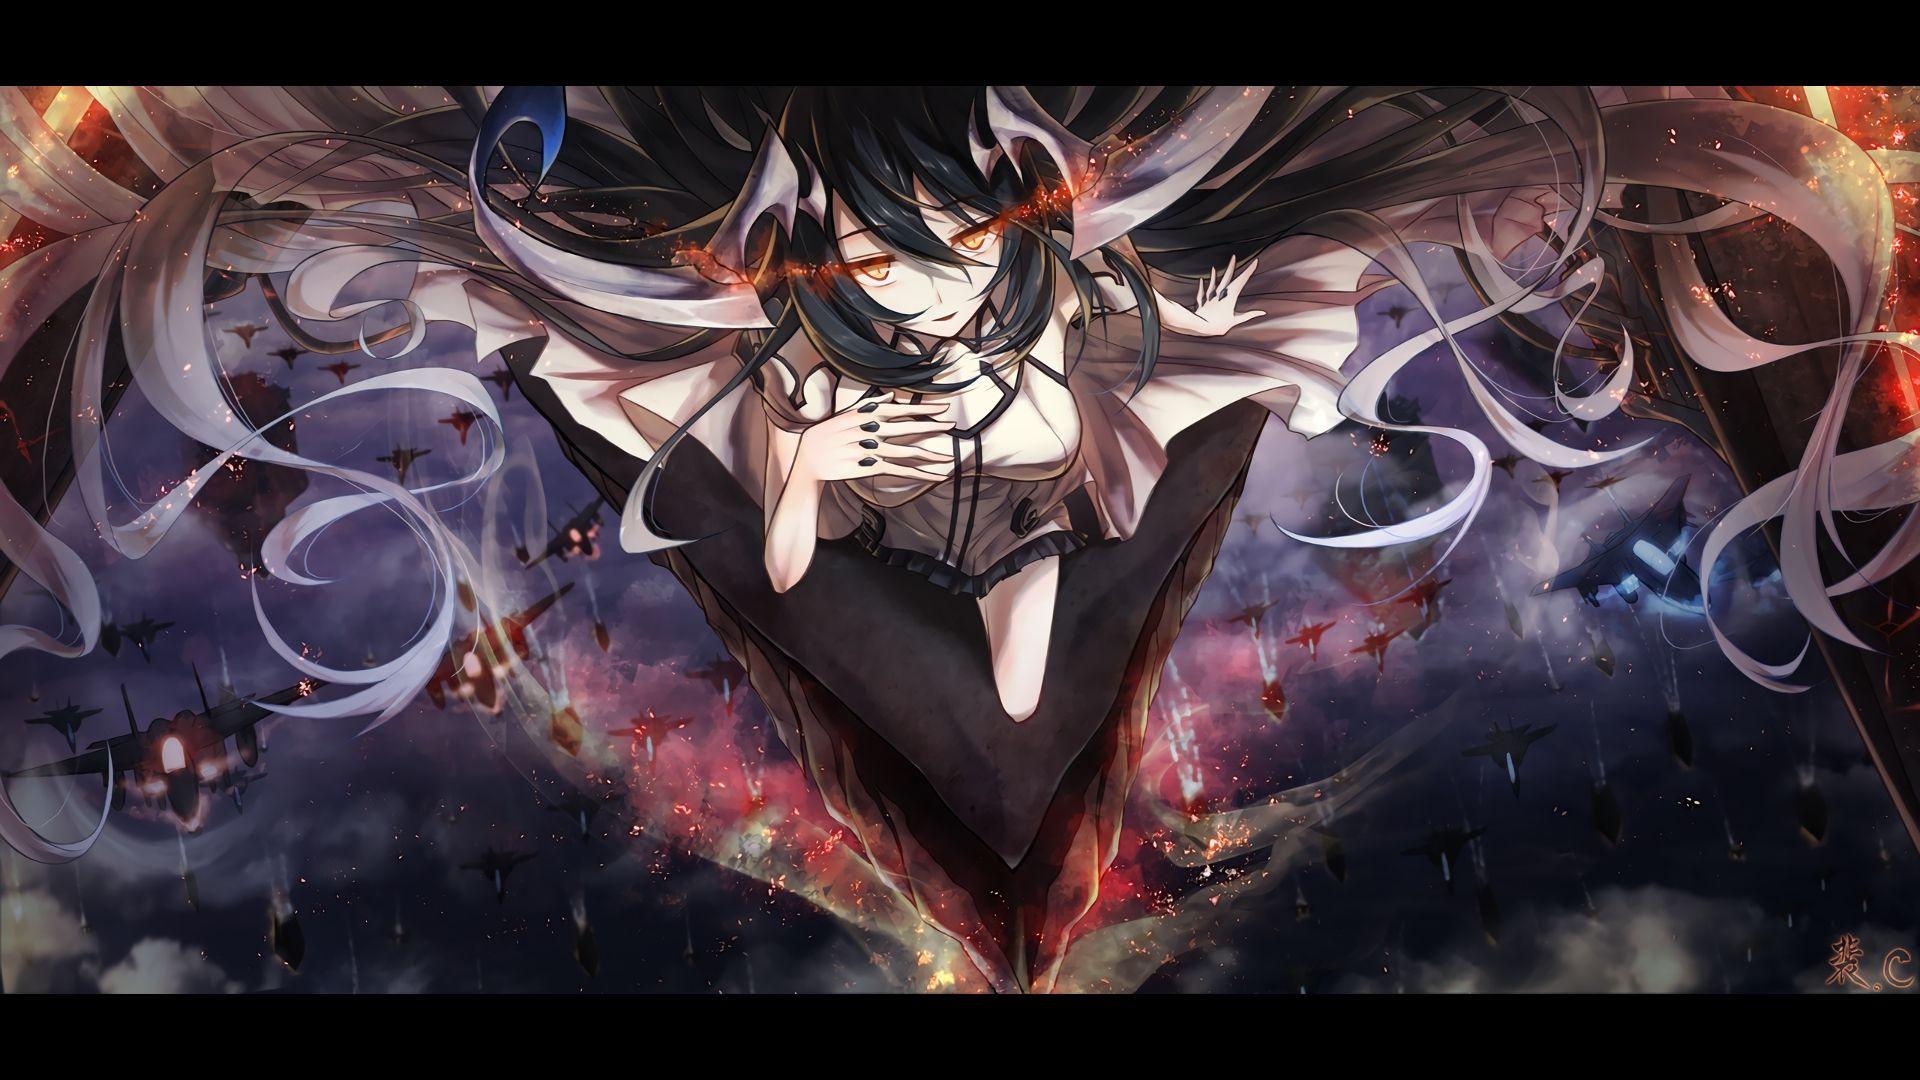 Anime Demon Girl Wallpaper Free Anime Demon Girl Background